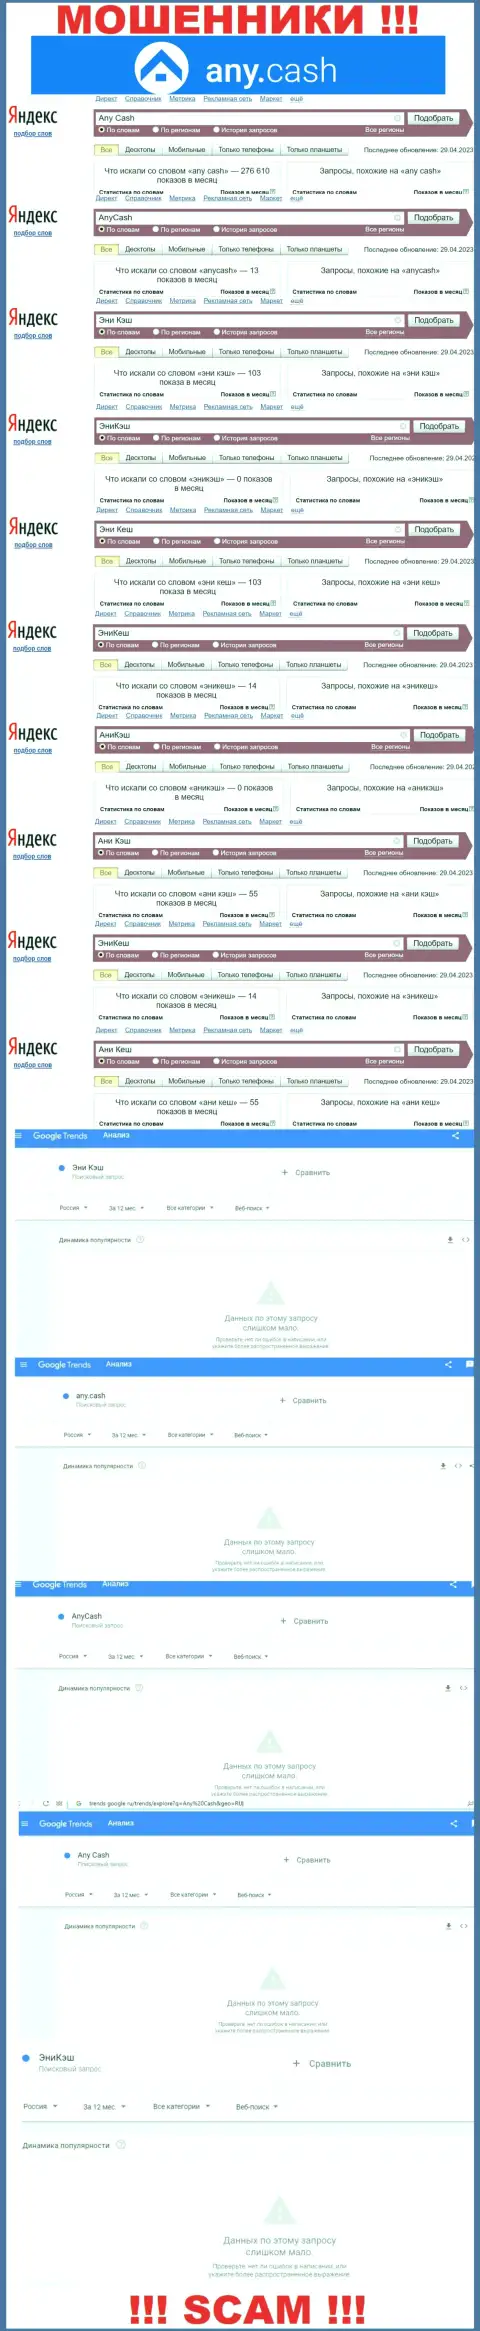 Скрин результатов поисковых запросов по противозаконно действующей организации Any Cash